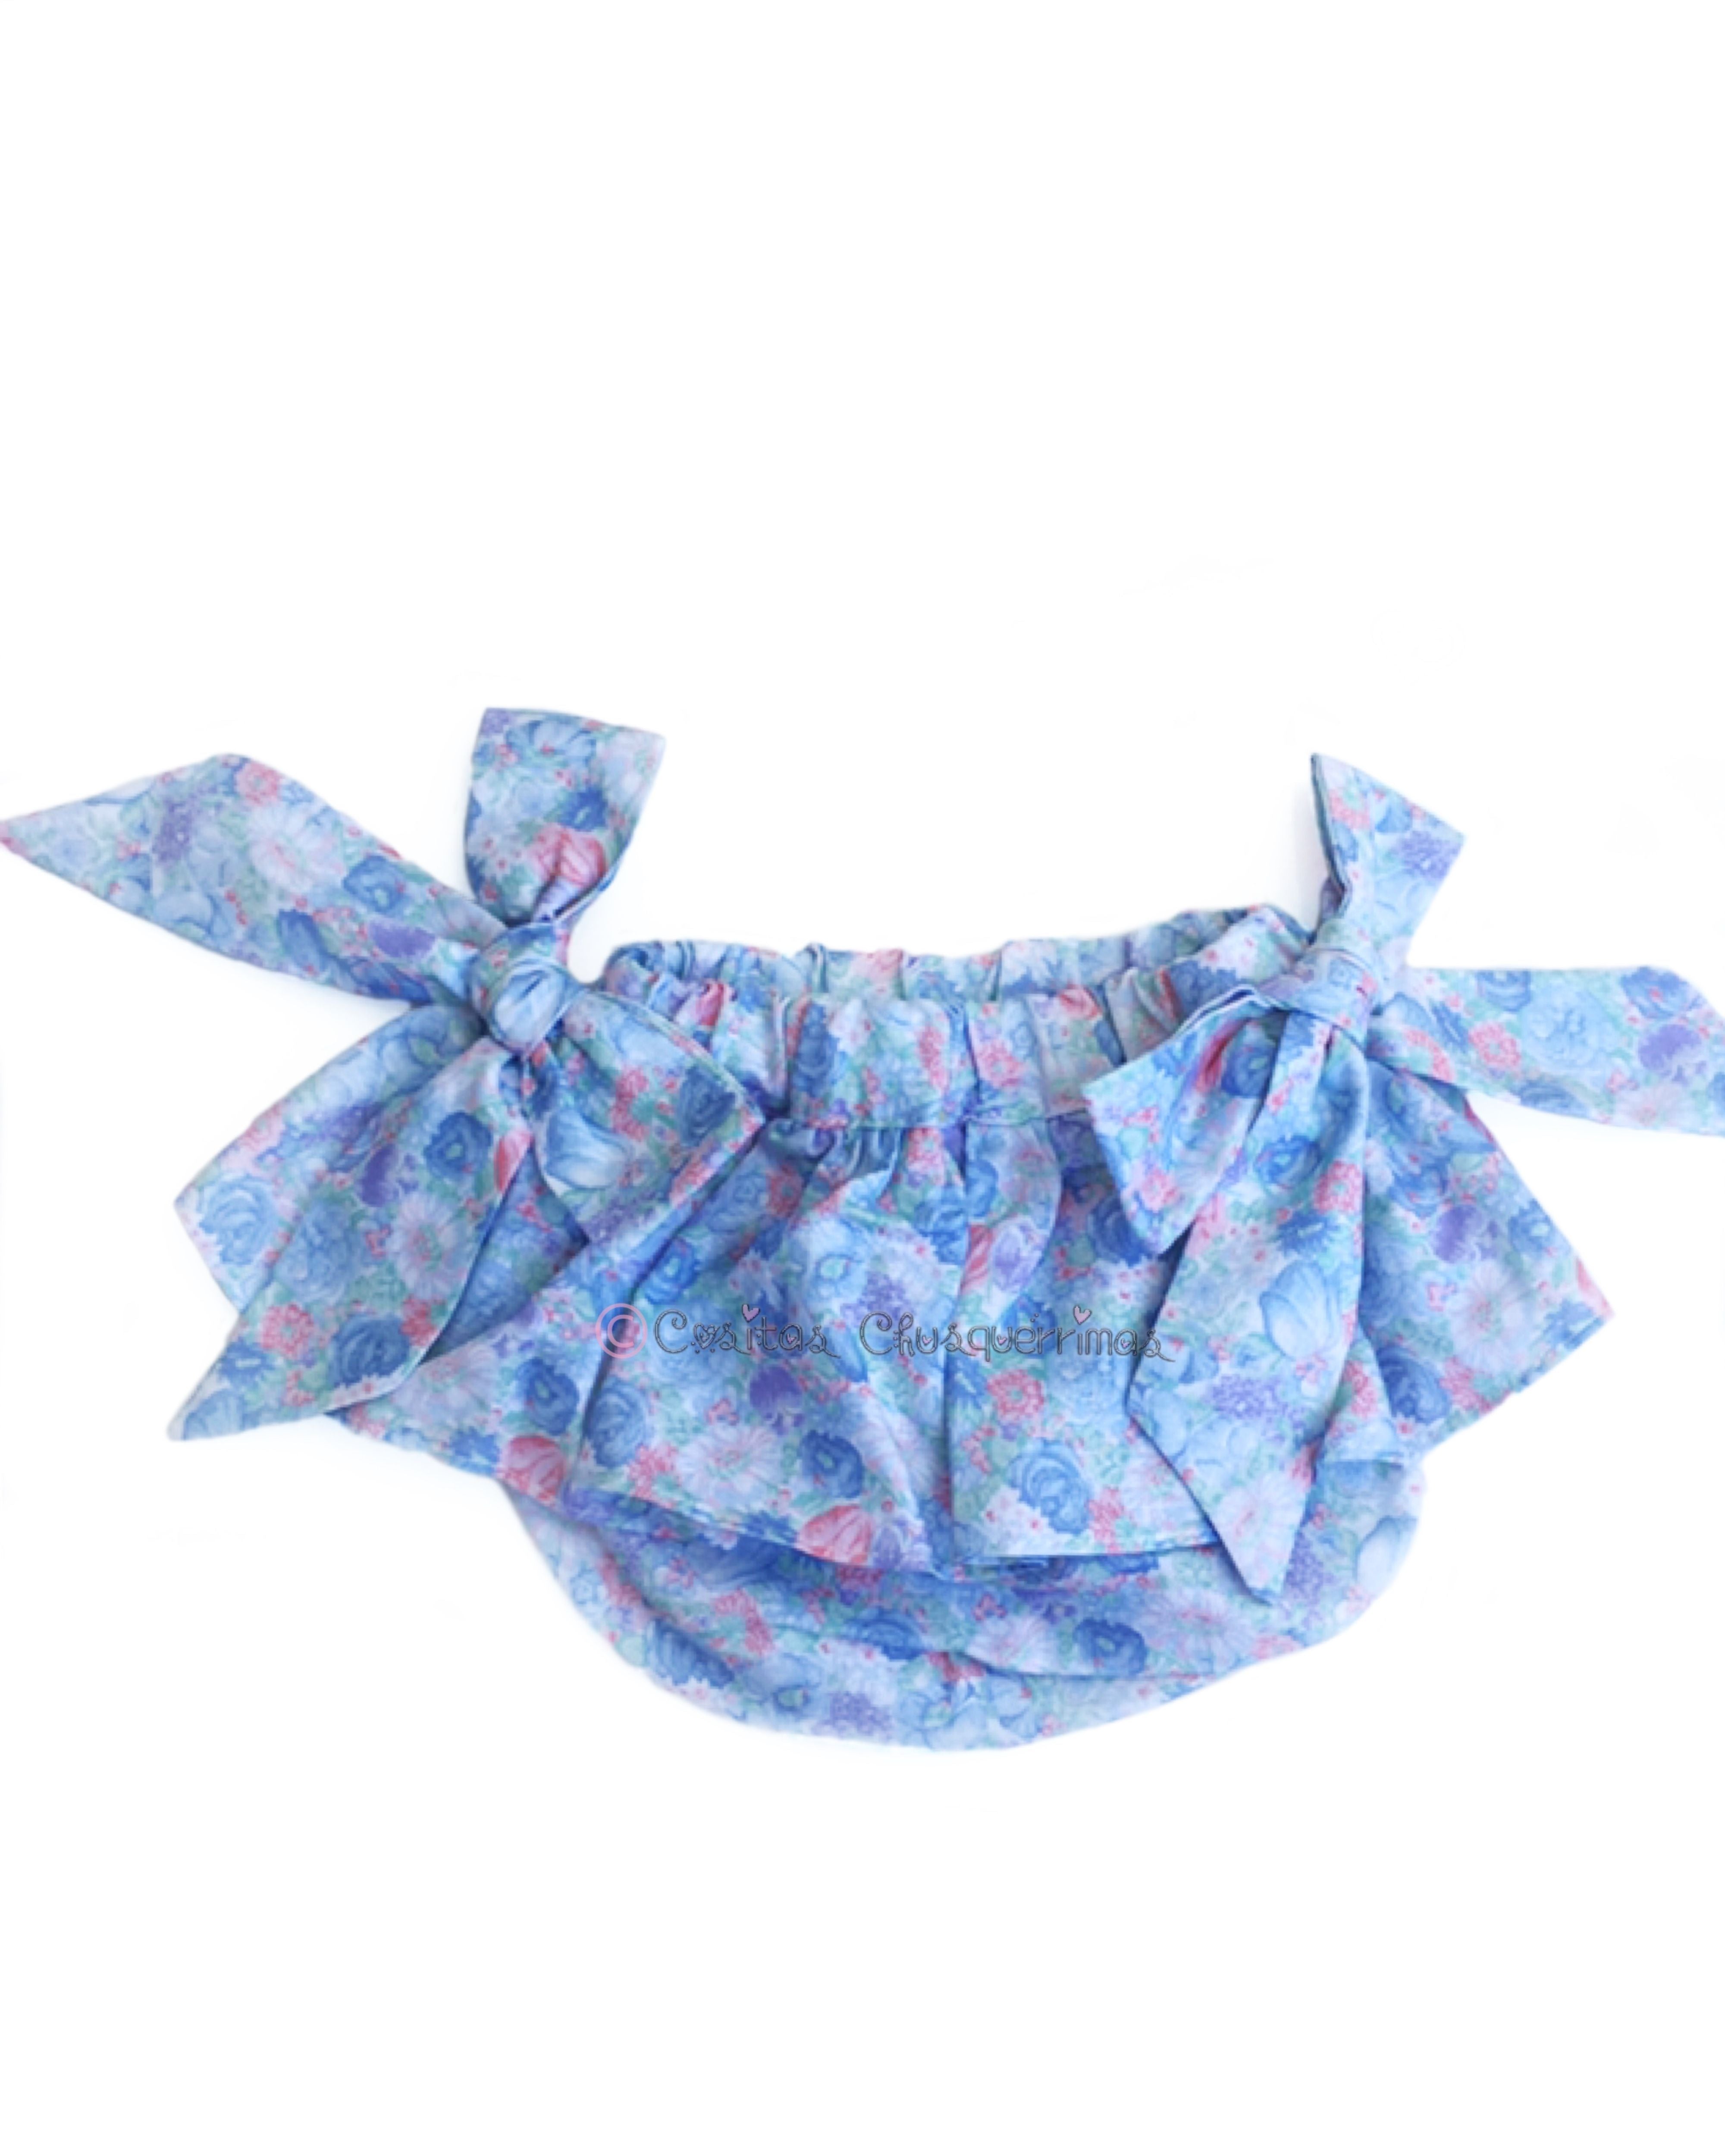 Culotte bebe niña volante lazos flores azul de Valentina Bebes – Cositas  Chusquérrimas